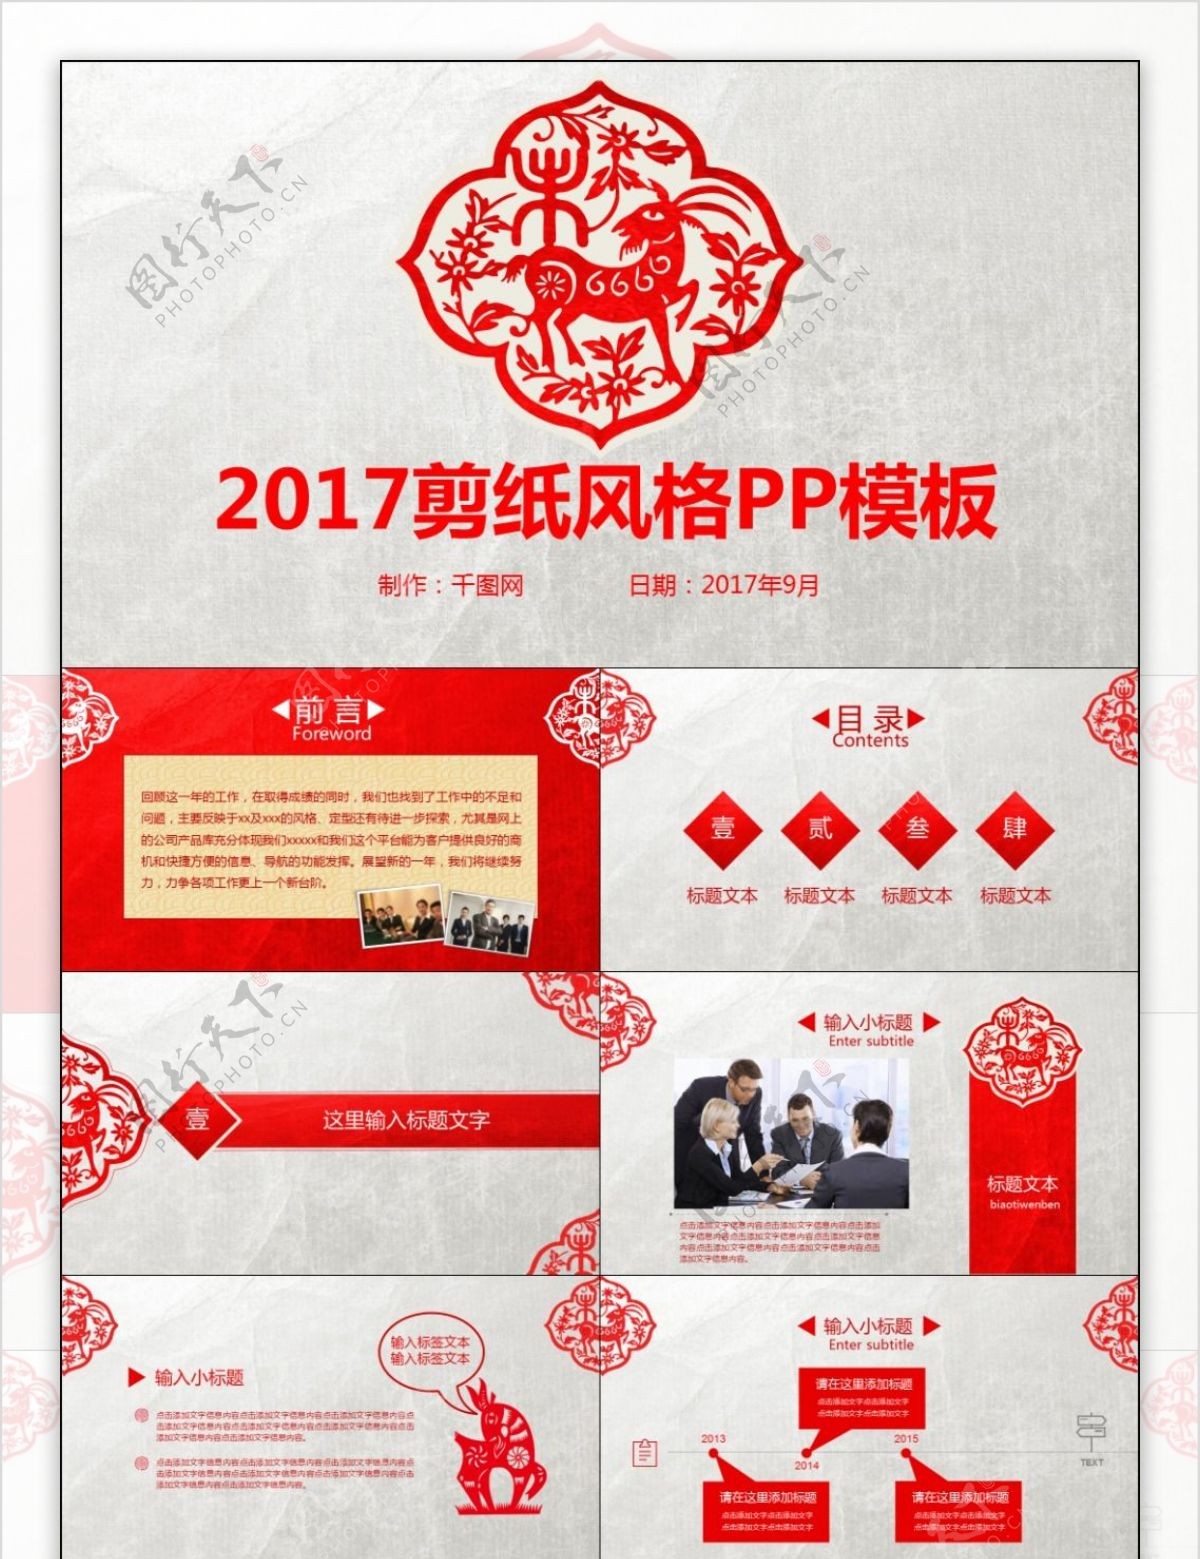 2017红色简约剪纸风格PP模板